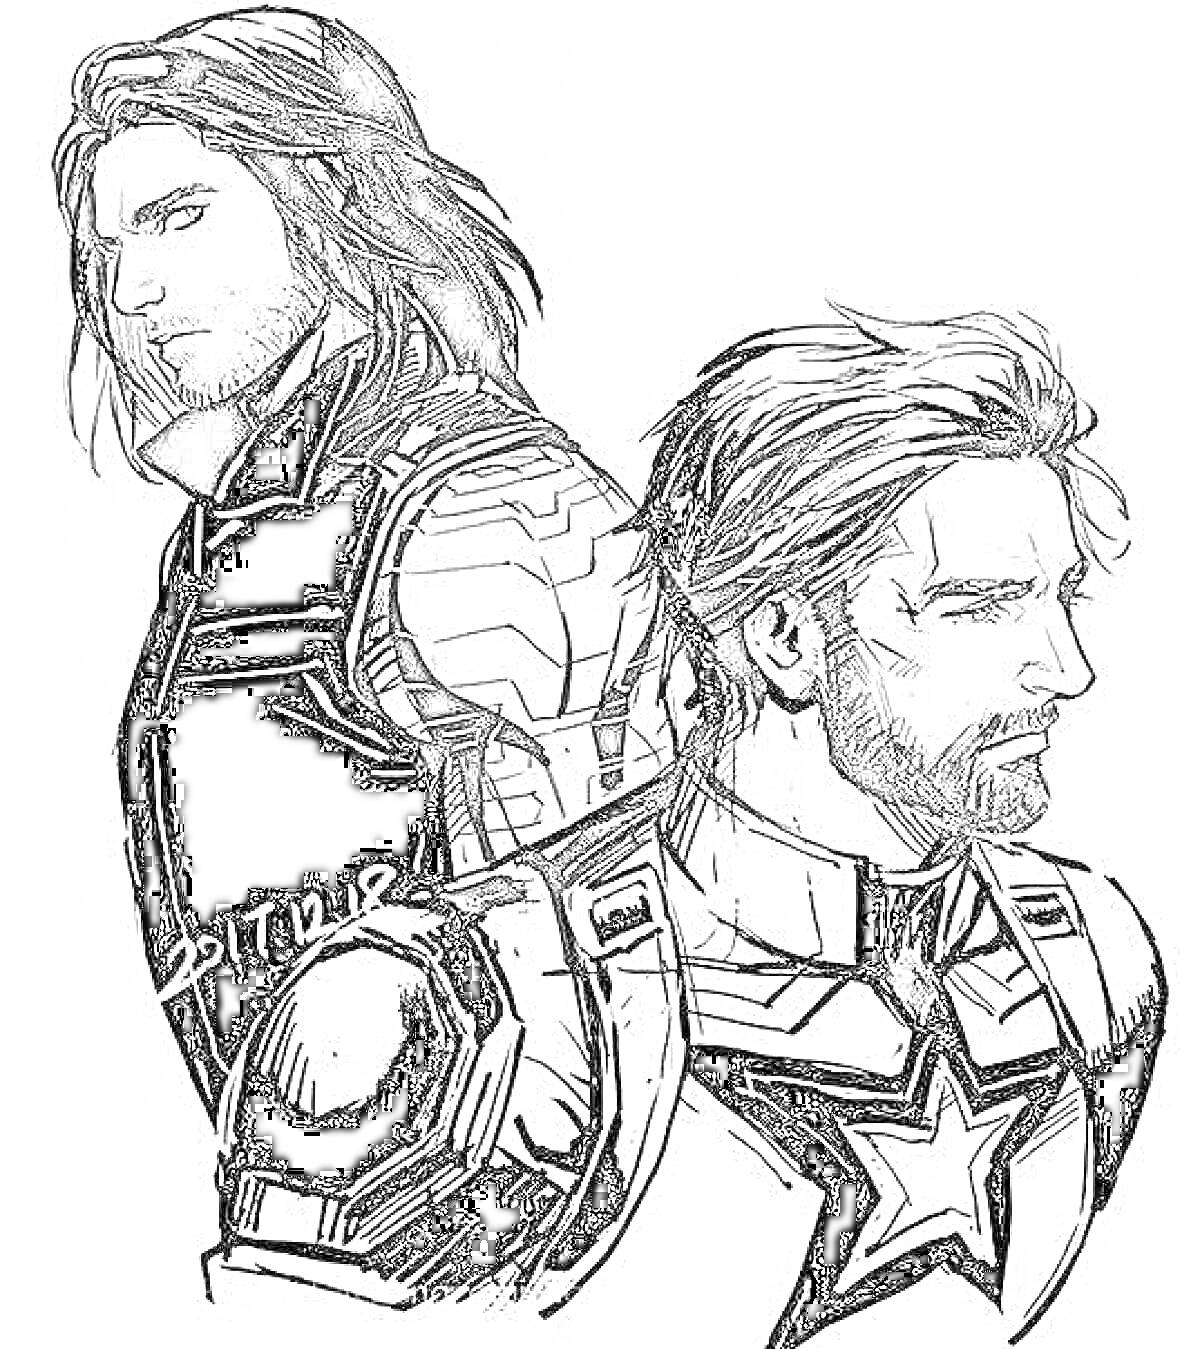 Раскраска Два мужчины в супергеройских костюмах со звездами на груди, один из которых с длинными волосами и металлической рукой, а другой с короткими волосами и бородой.